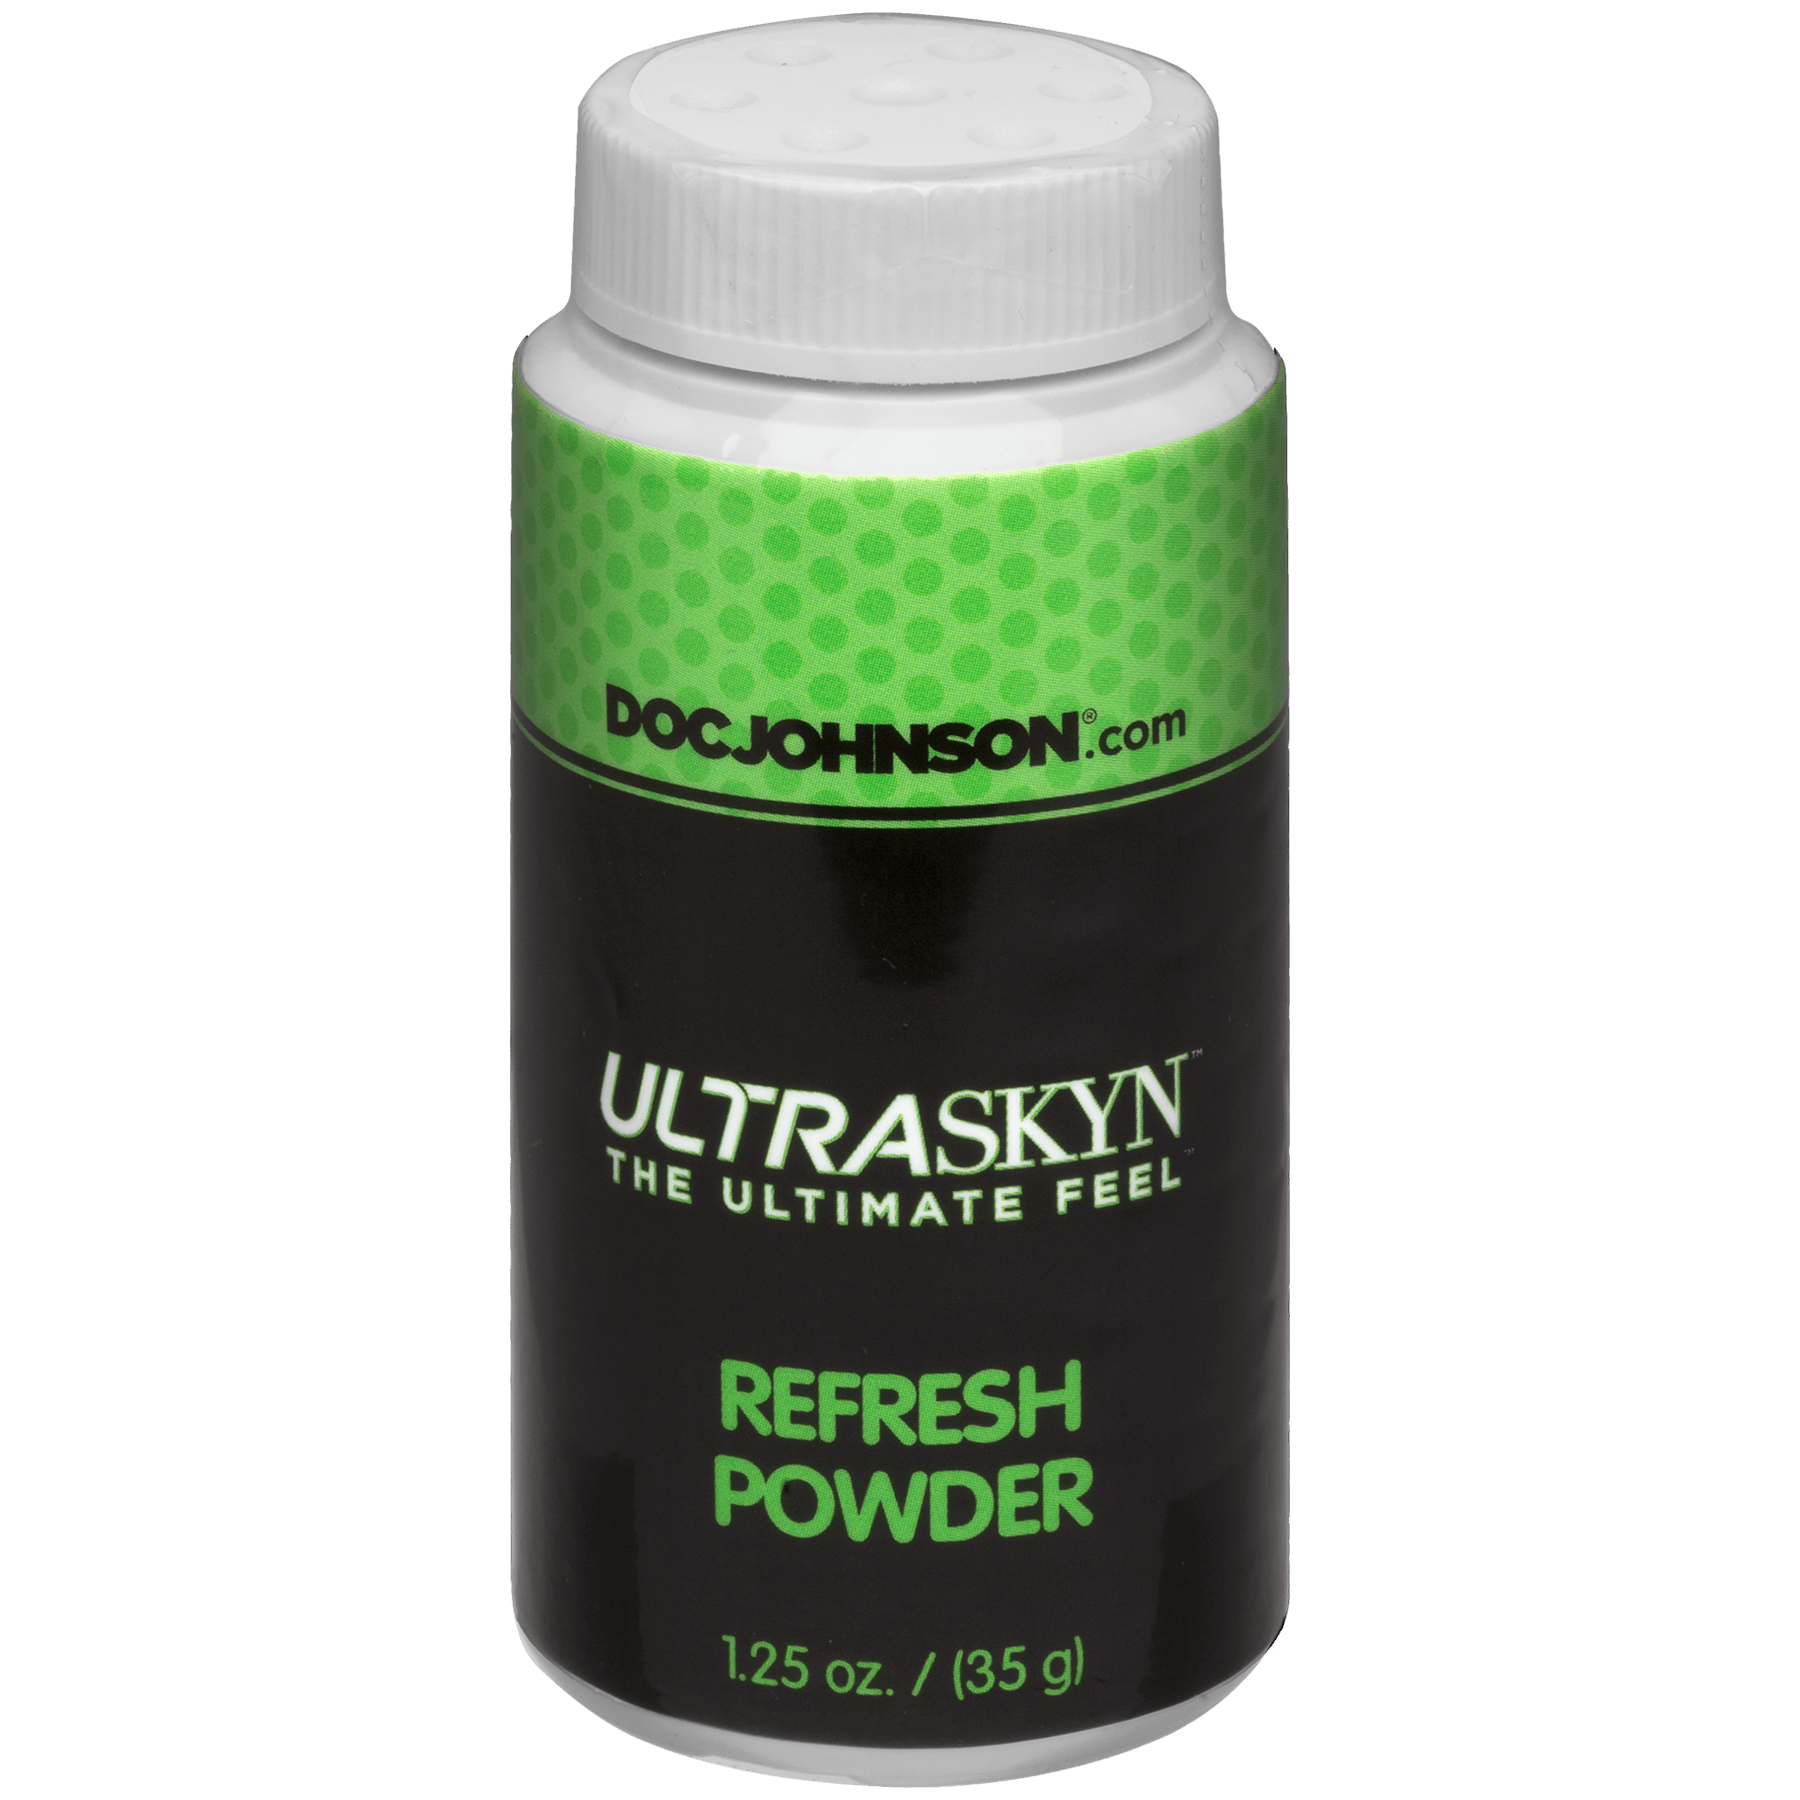 Doc Johnson Ultraskyn Refresh Powder - Buy At Luxury Toy X - Free 3-Day Shipping